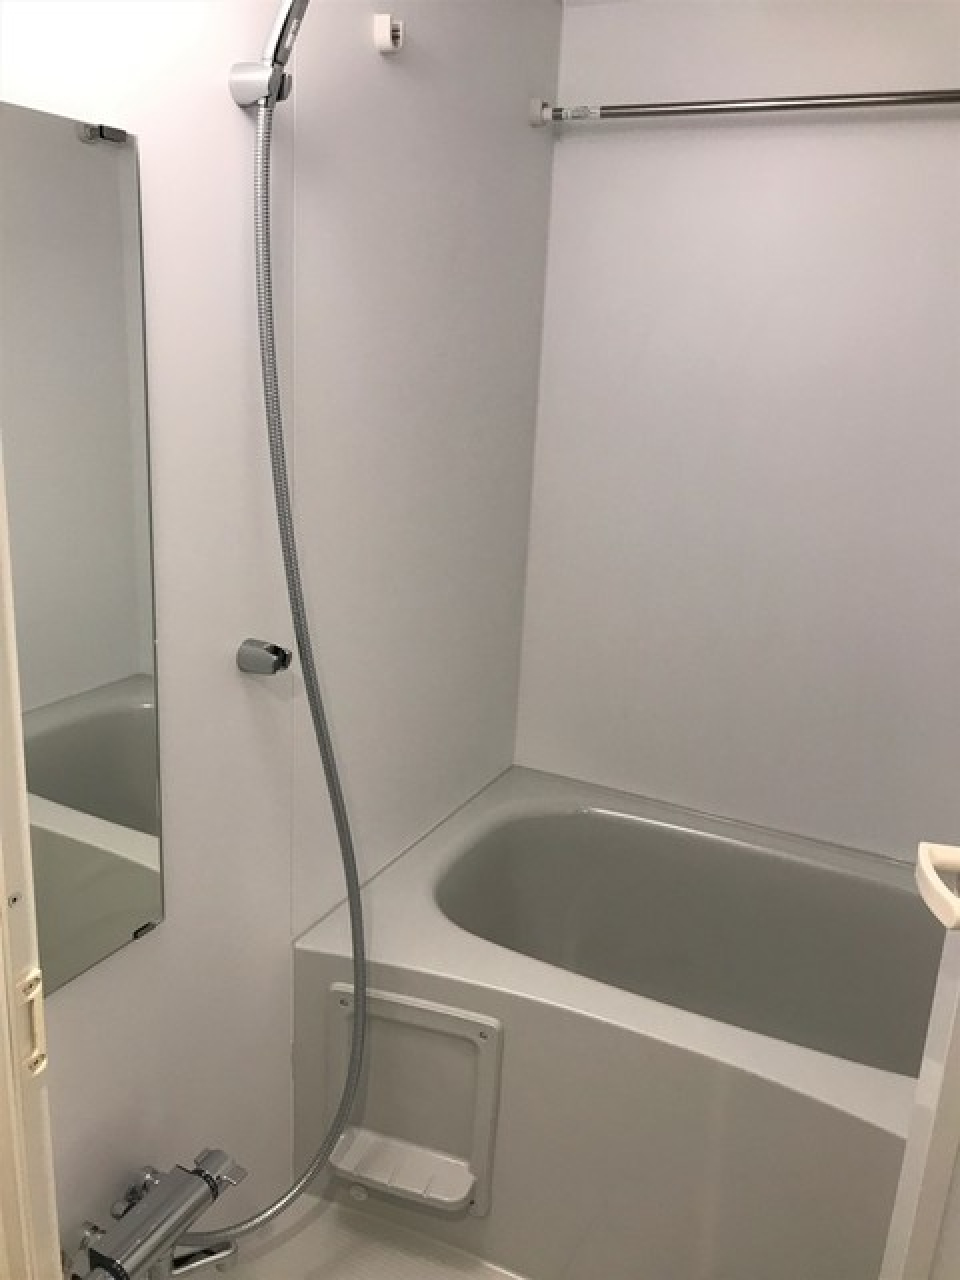 白くまとめられた浴室。※写真は同タイプ住戸です。